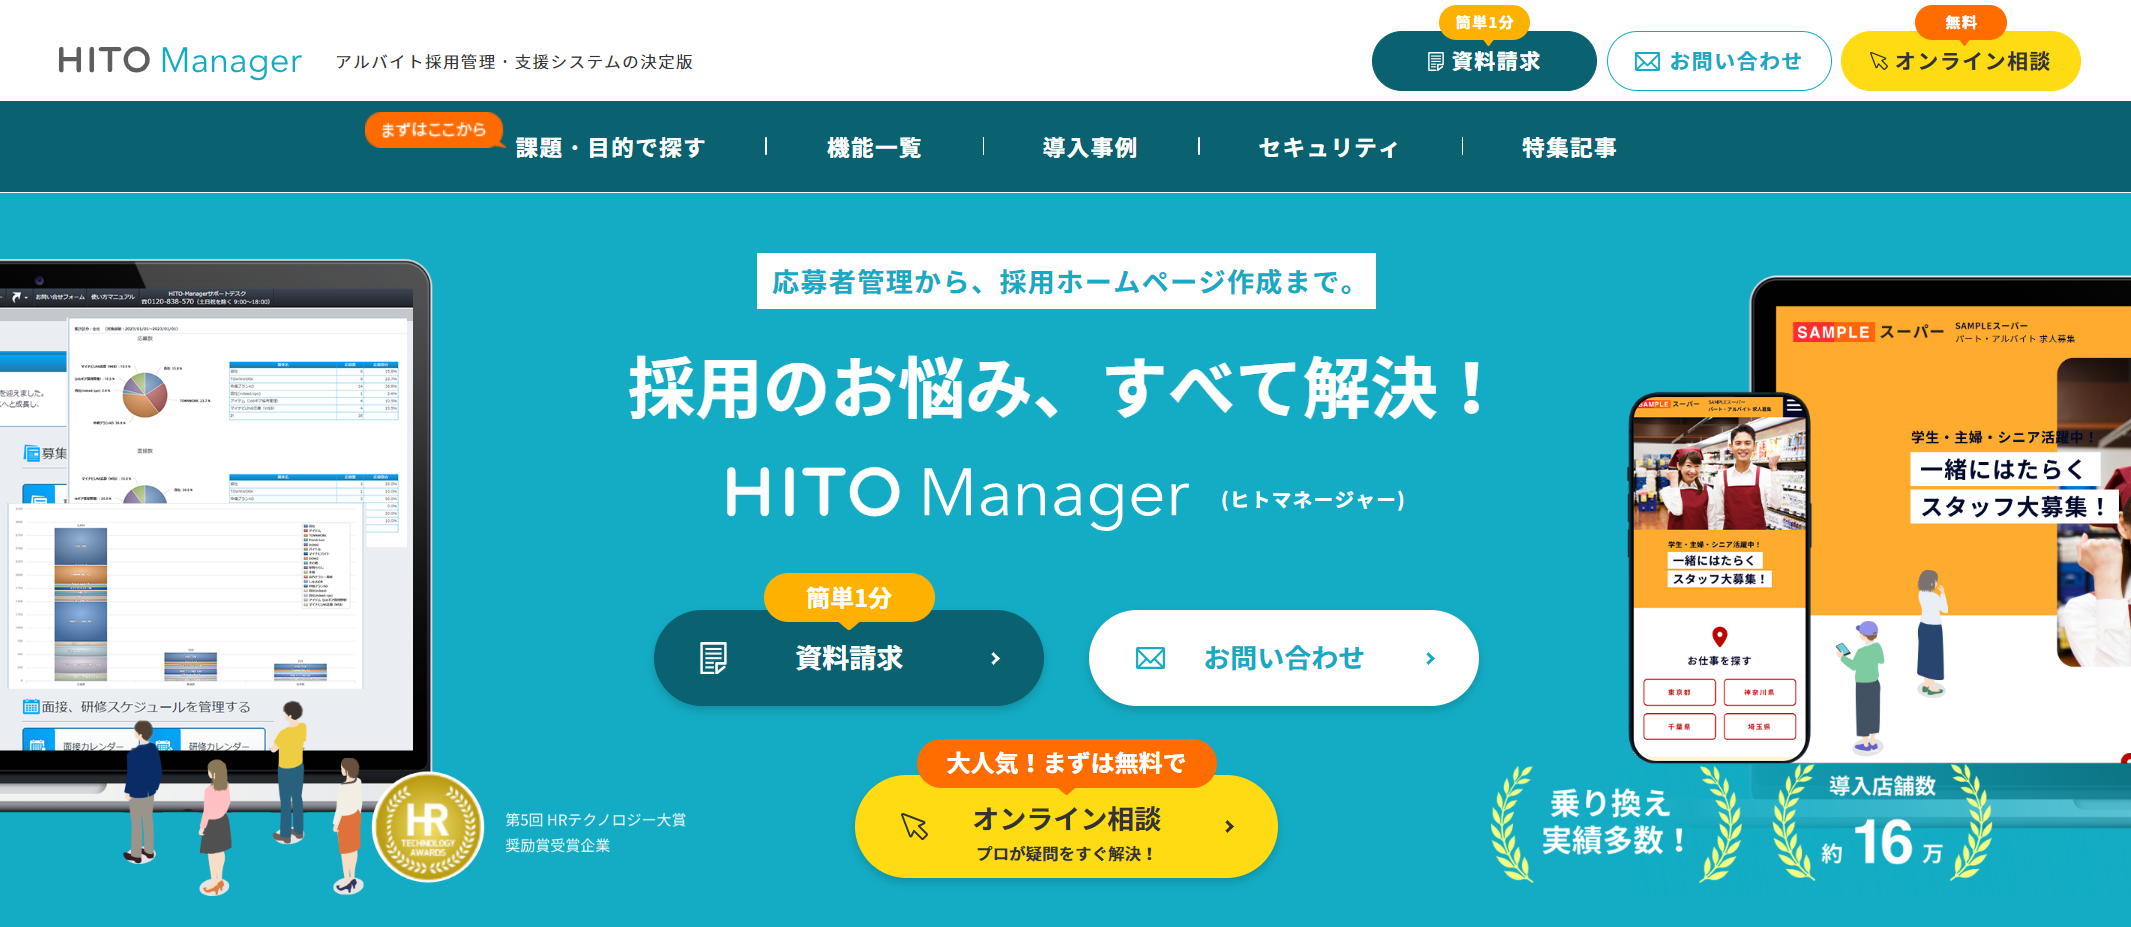 HITO-Manager／パーソルプロセス＆テクノロジー(株)